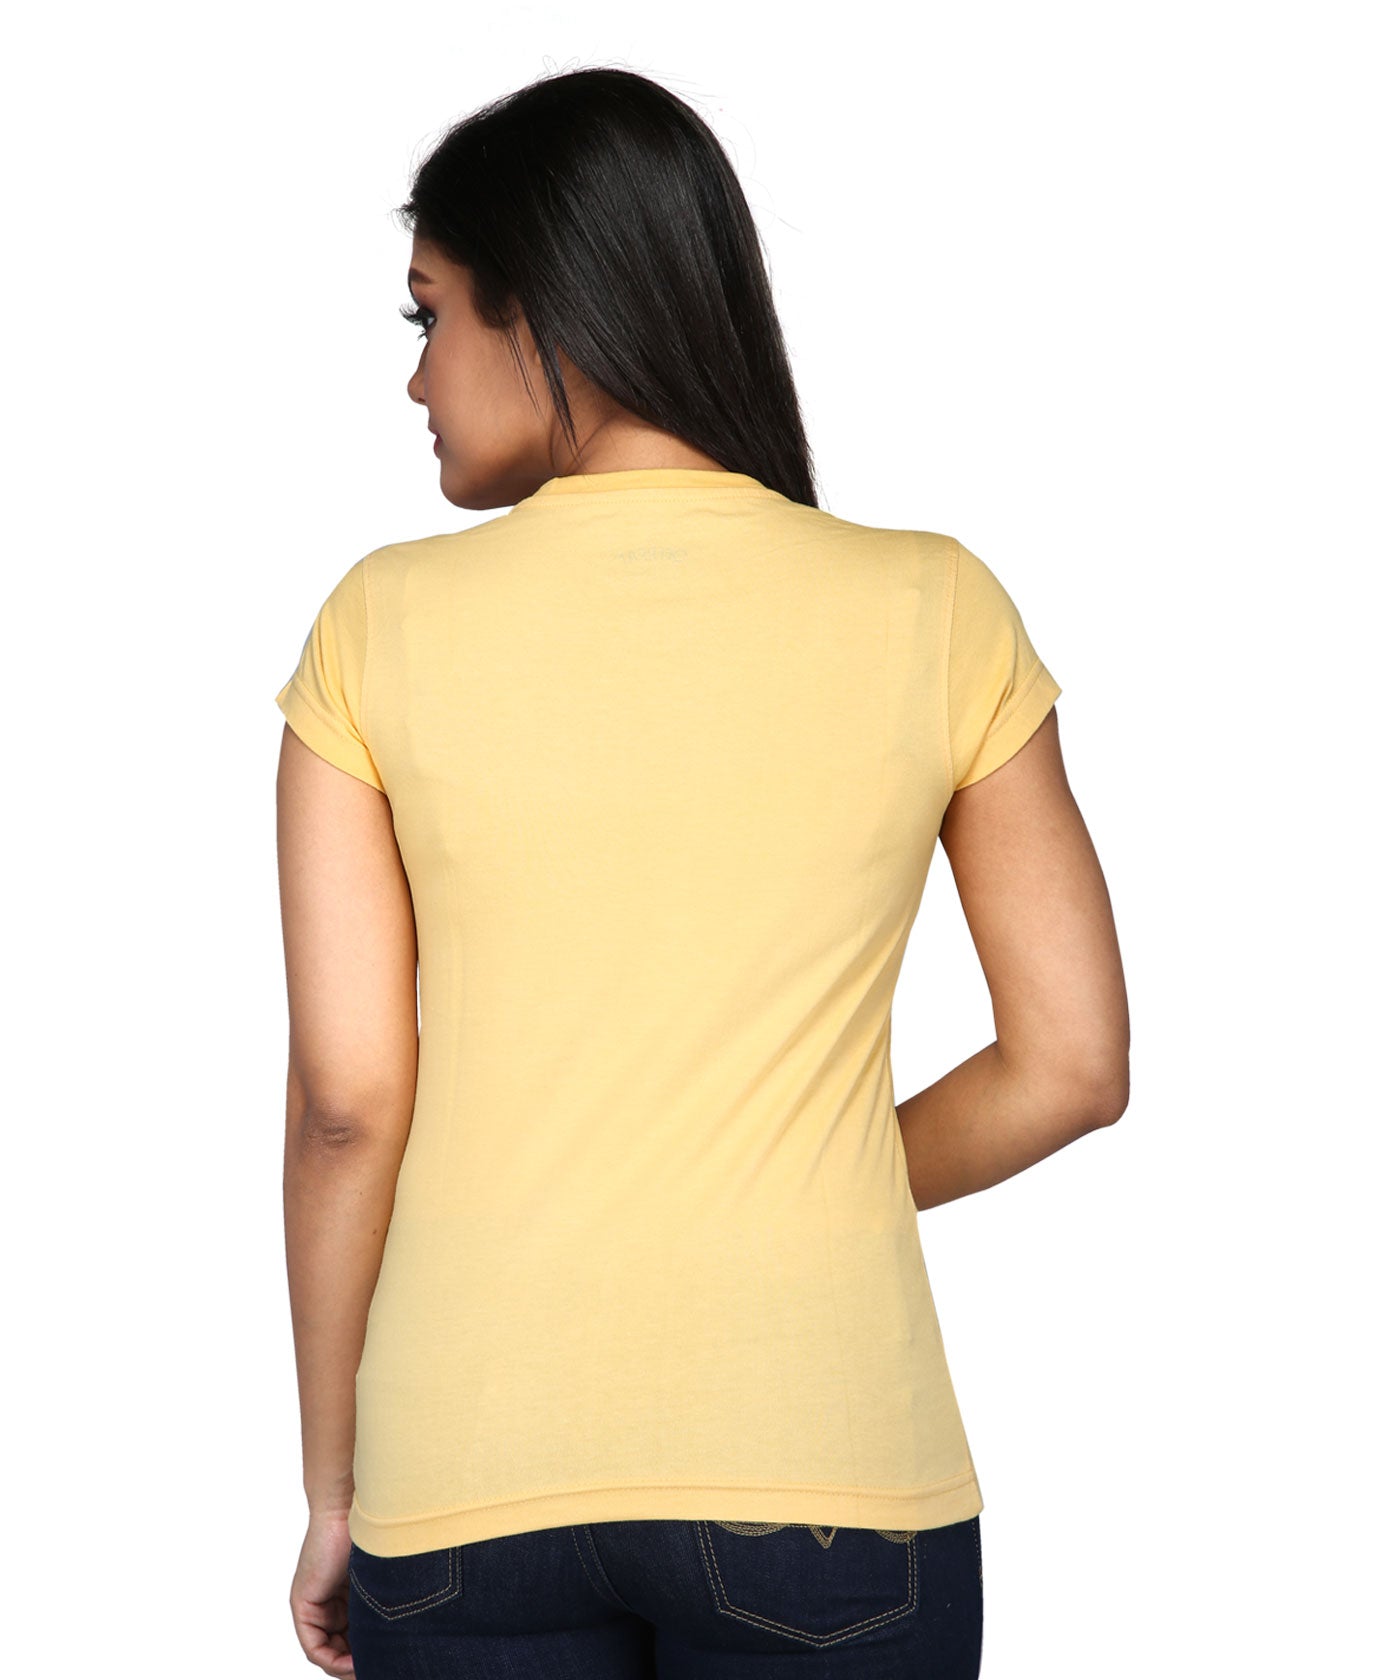 Mandala Yoga - Premium Round Neck Cotton Tees for Women - Golden Yellow